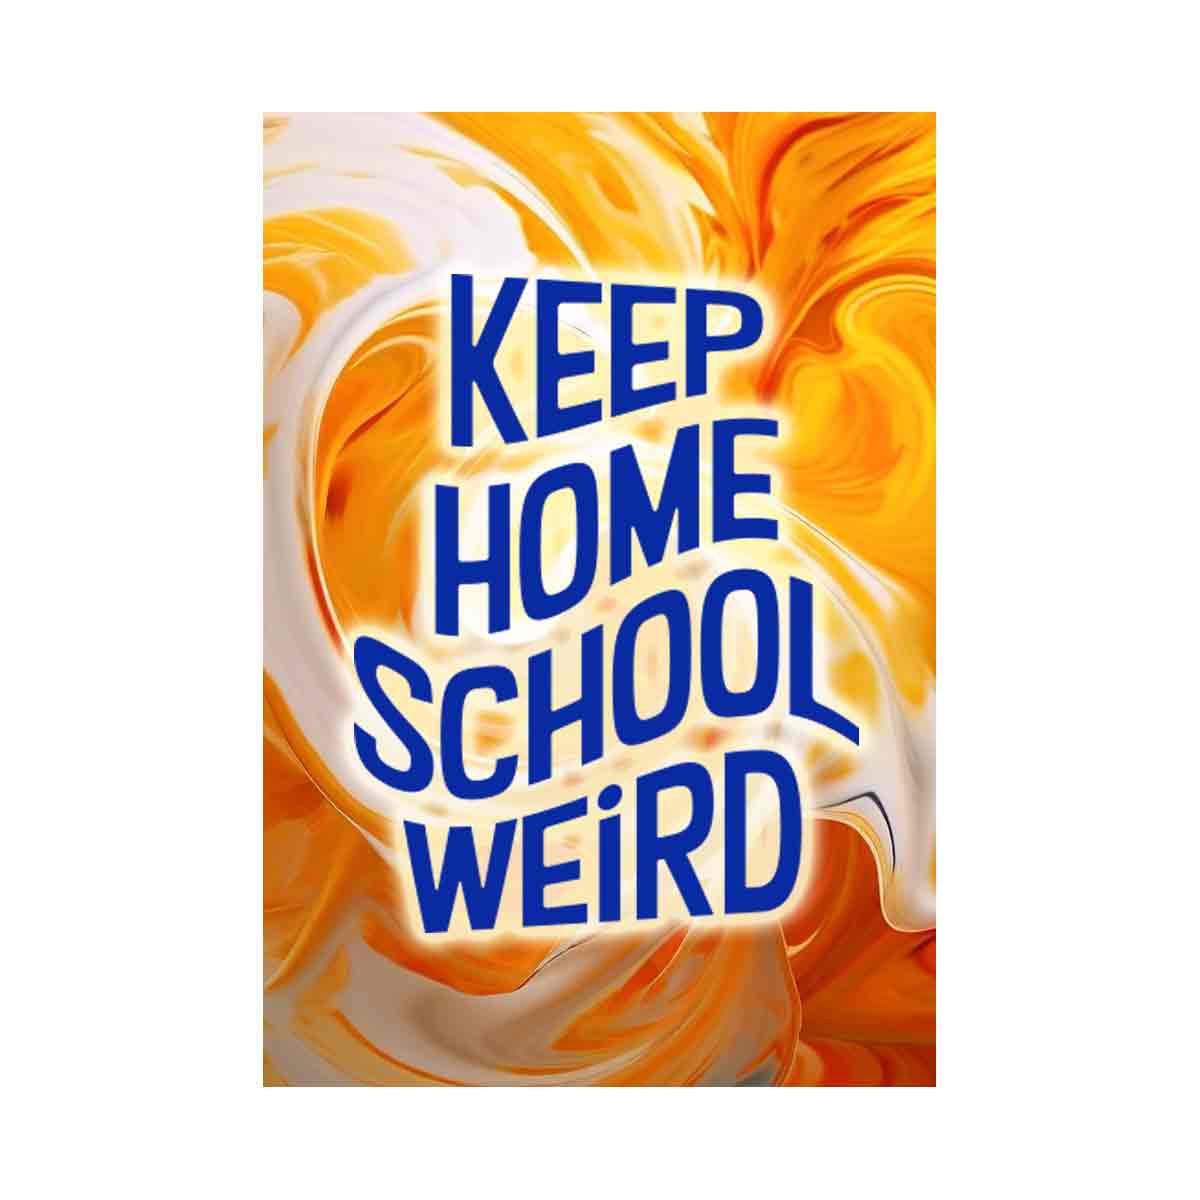 Keep home school weird